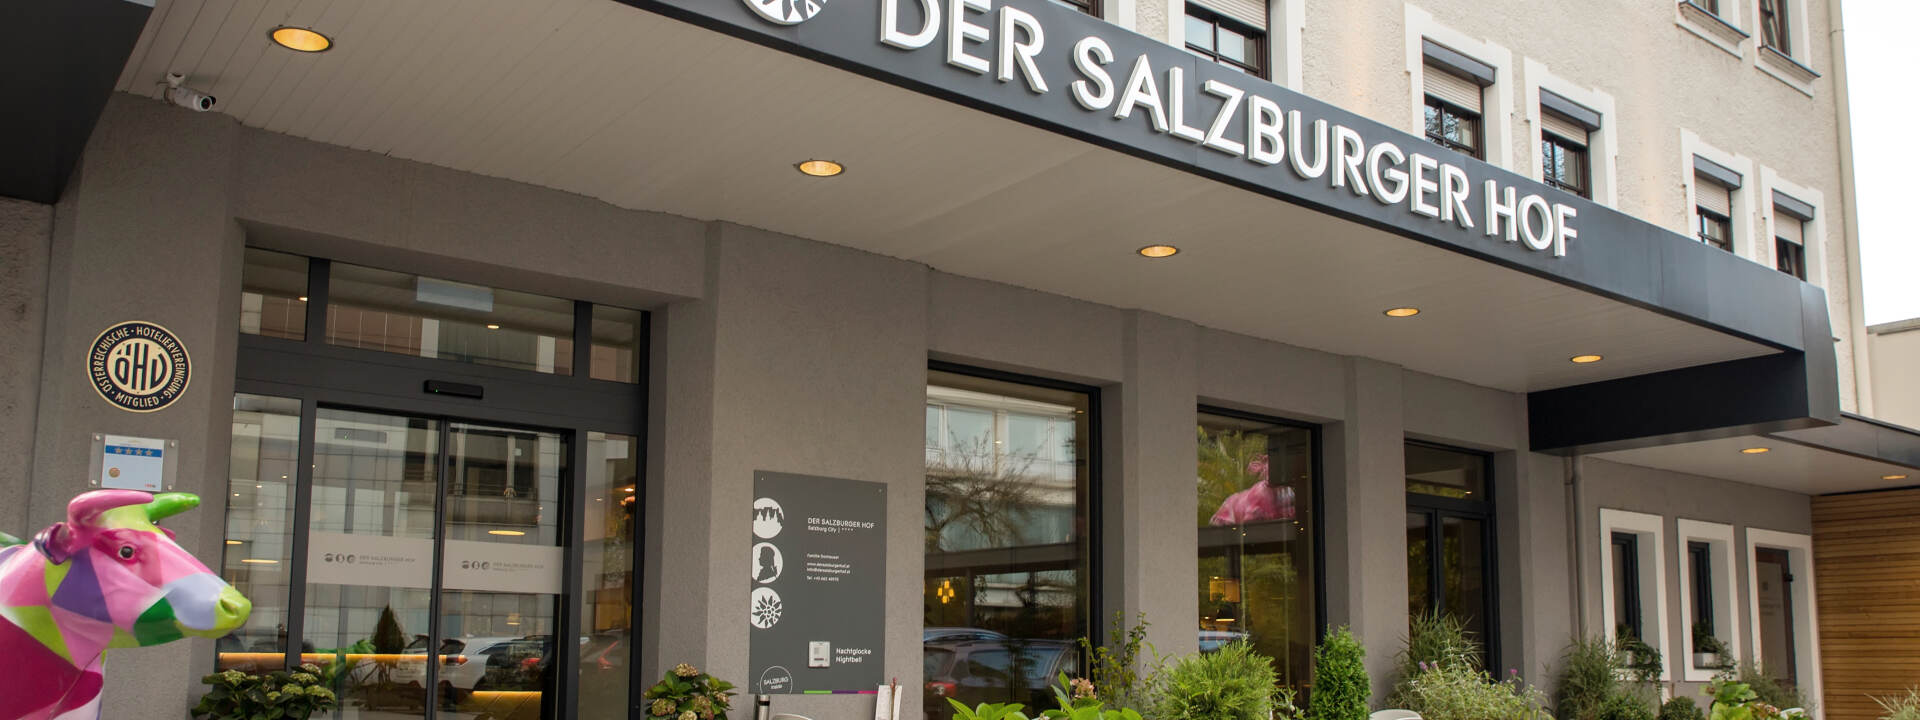 Der Salzburger Hof - entrance © Der Salzburger Hof